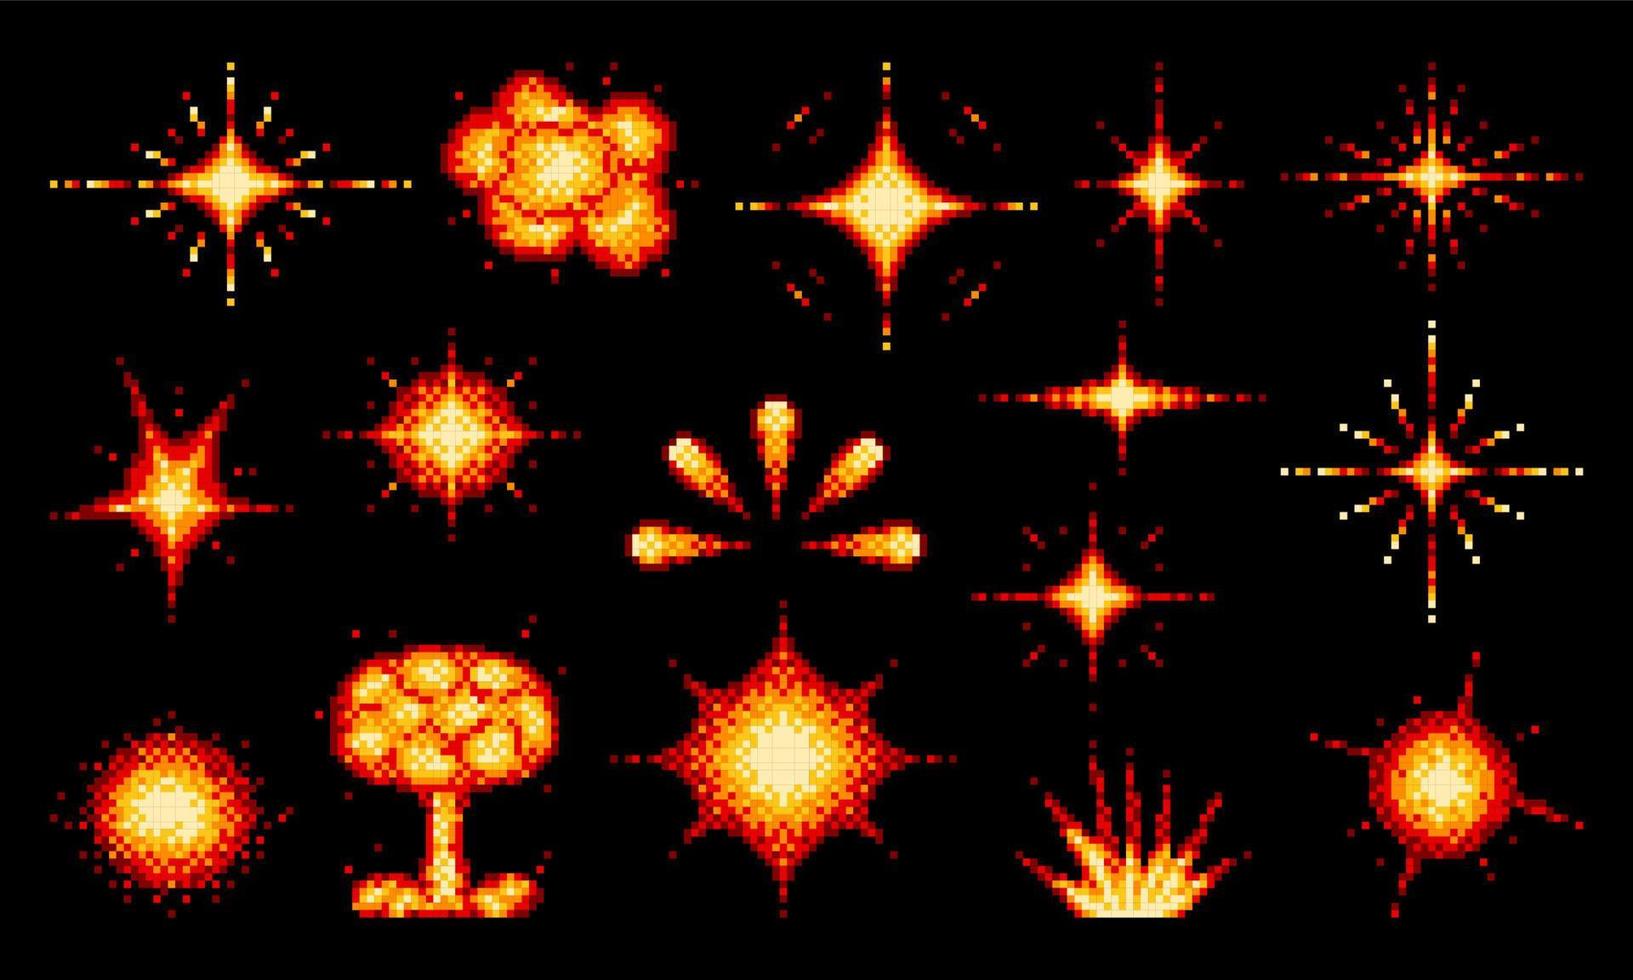 atomair bom, dynamiet brand ontploffing pixel explosies vector